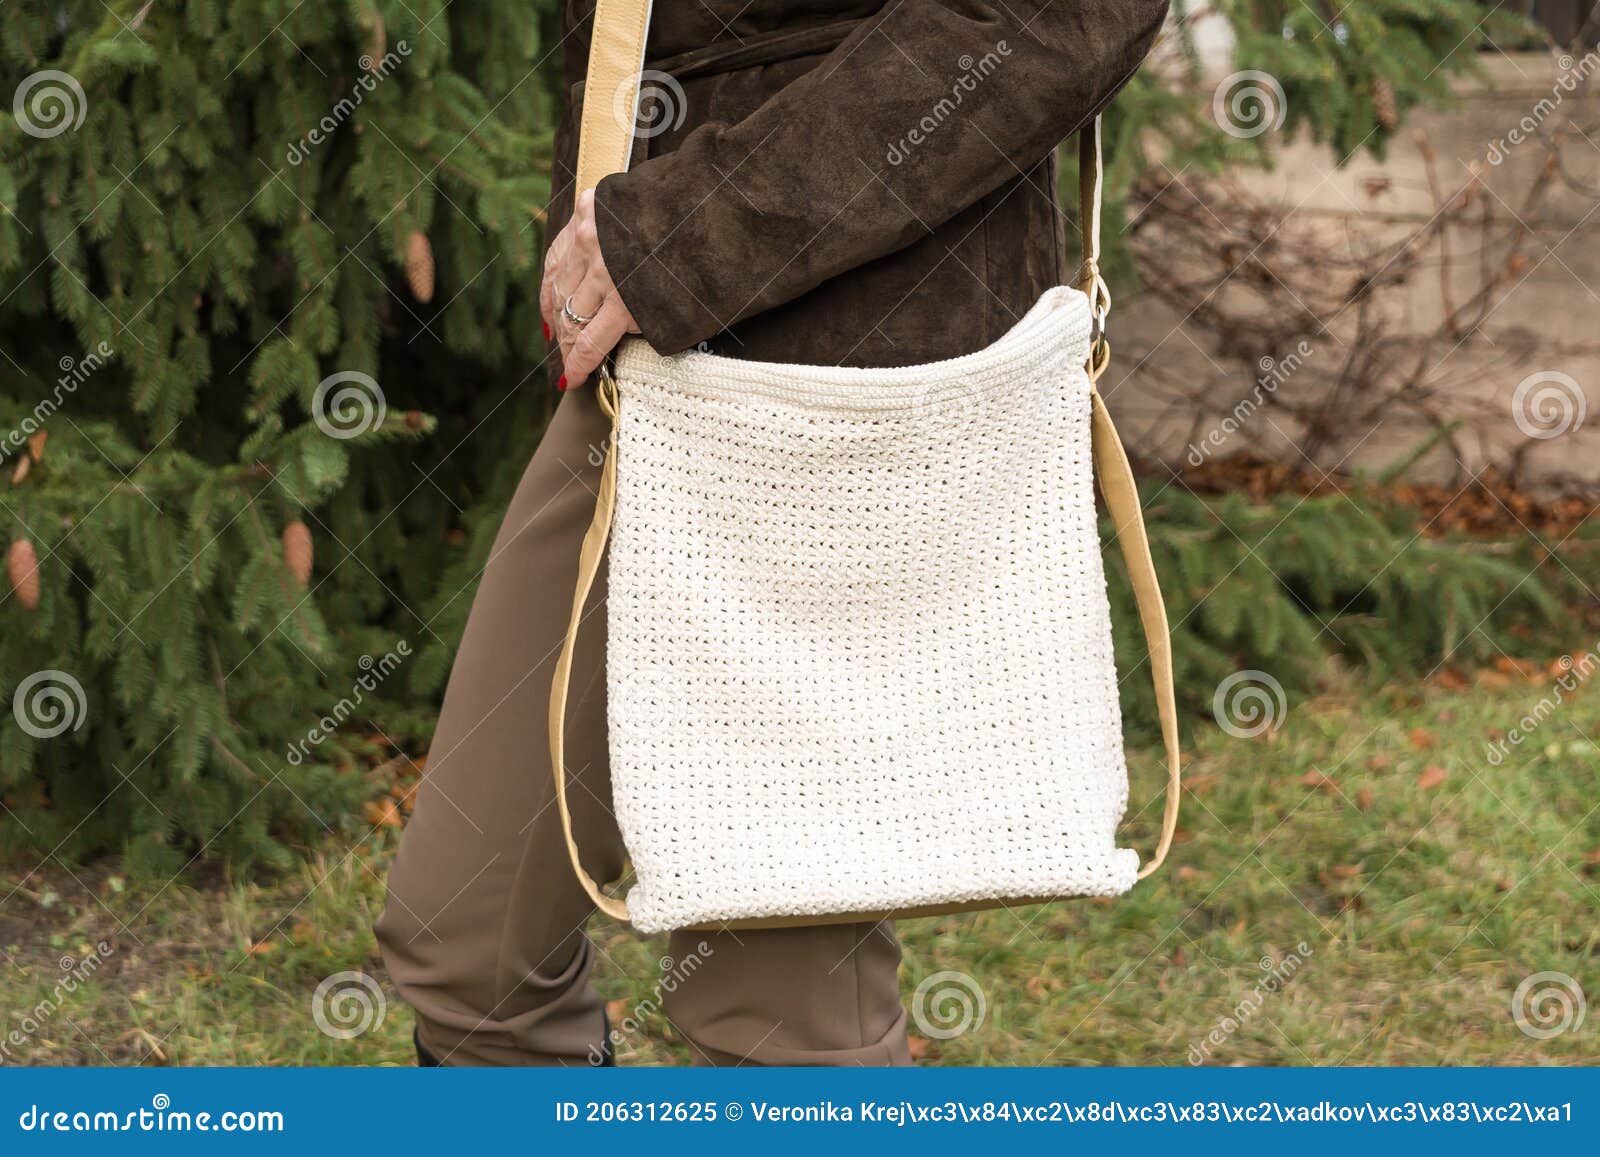 Mooie Gehaakte Witte Handtas in De Herfst Stock Afbeelding - Image of  najaar, kleding: 206312625